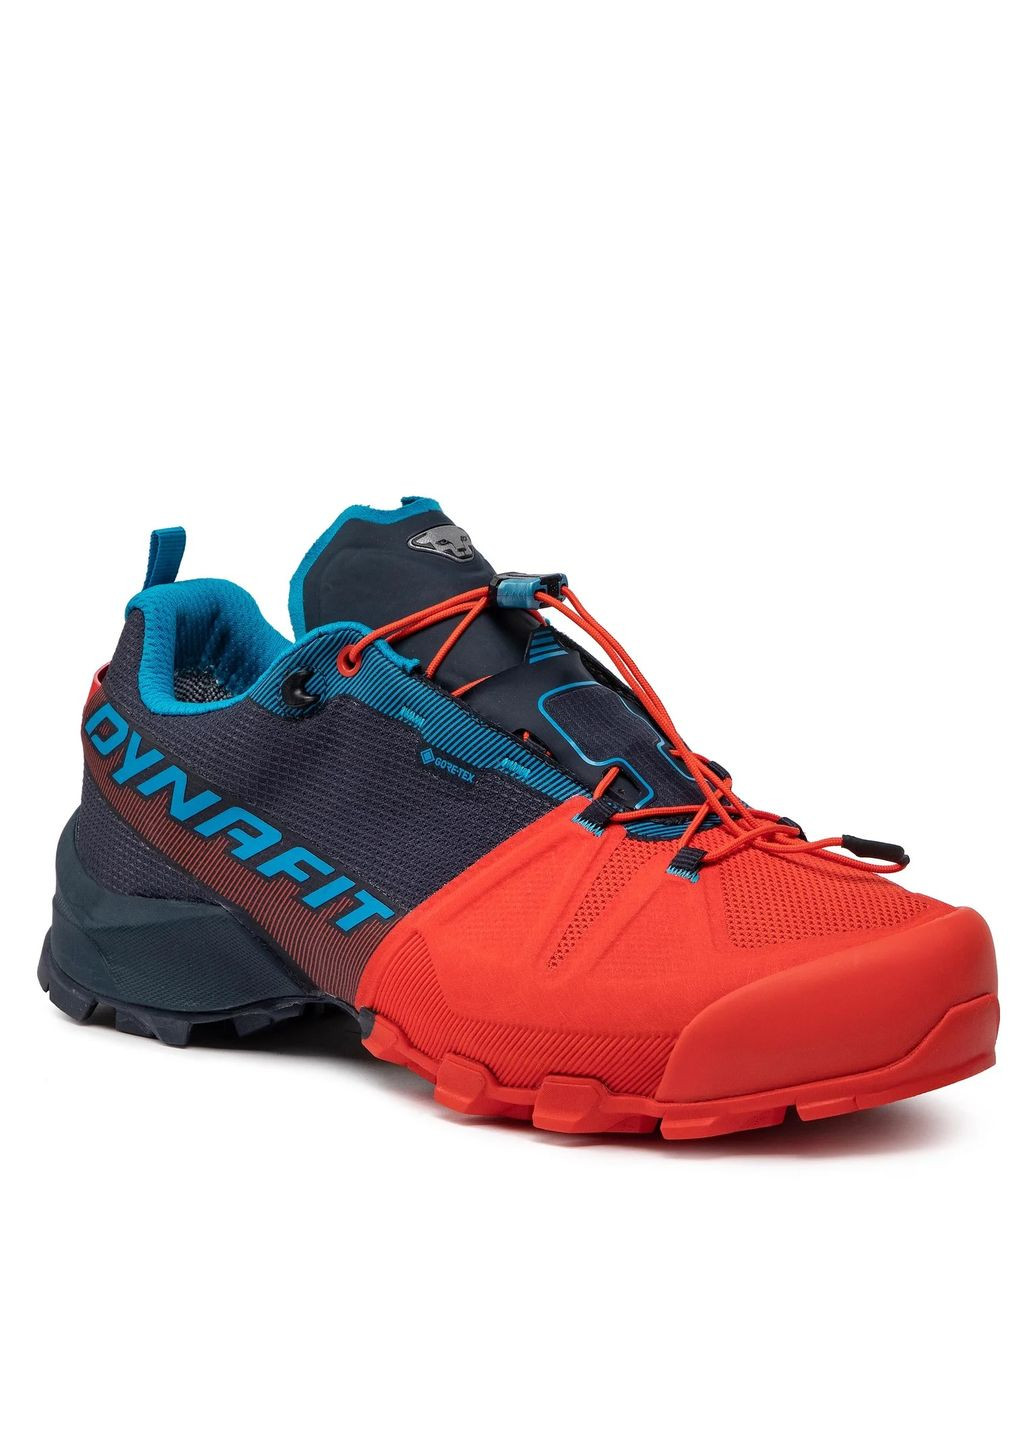 Комбіновані всесезон кросівки чоловічі transalper gtx синій-помаранчевий Dynafit